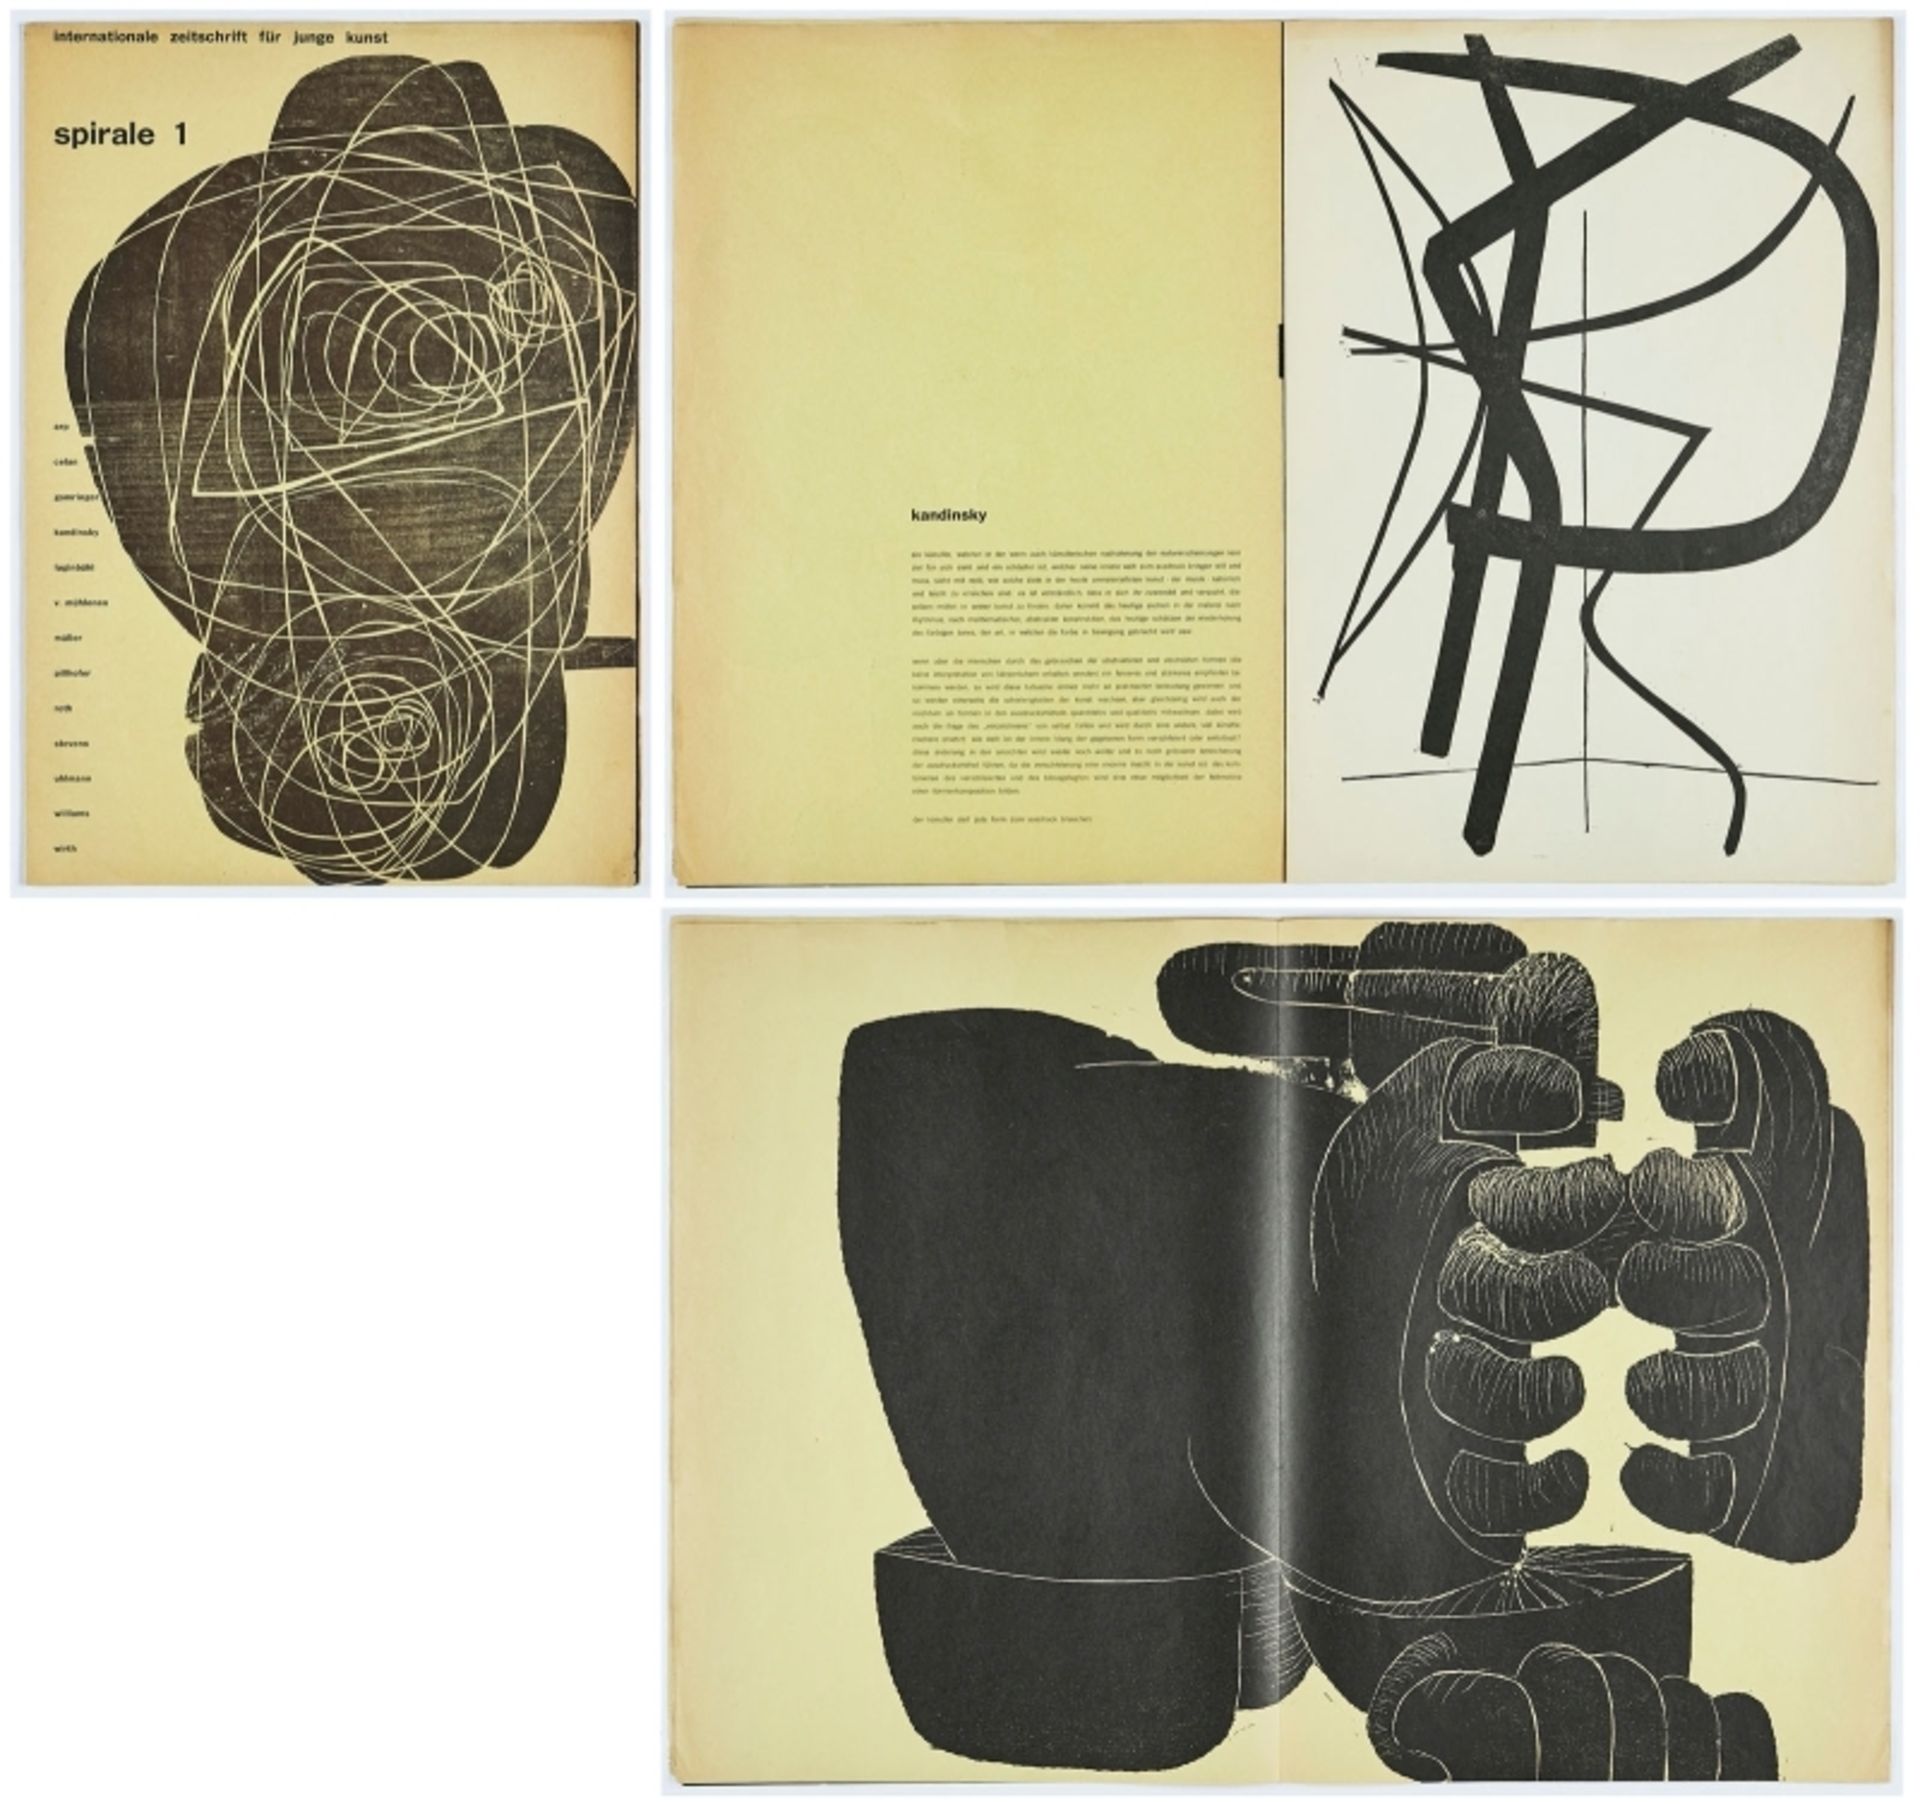 "spirale #1. internationale zeitschrift für junge kunst" 1953